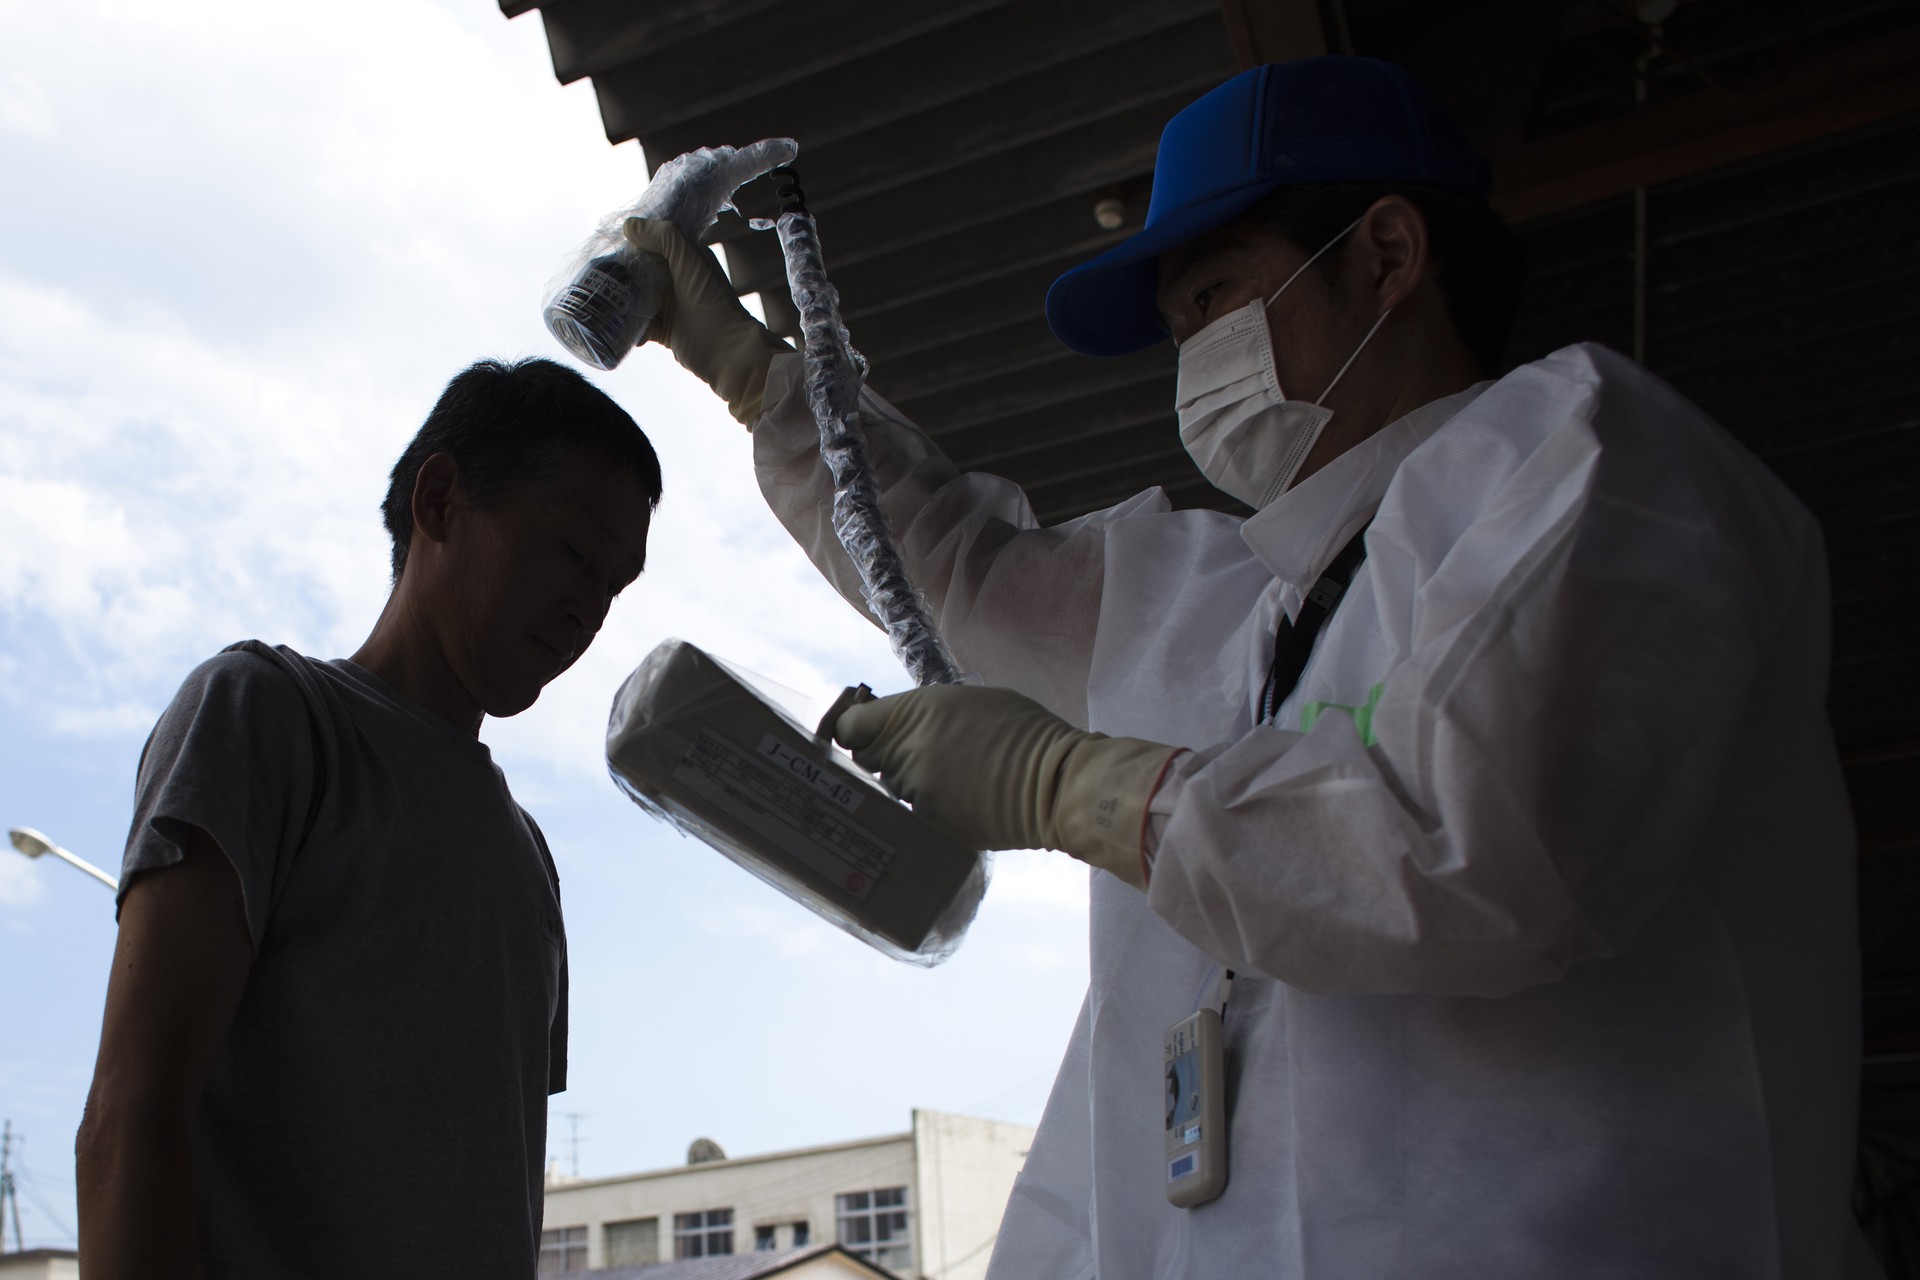 Homem passa por teste de radiação, em área próxima à Fukushima (Foto: getty)